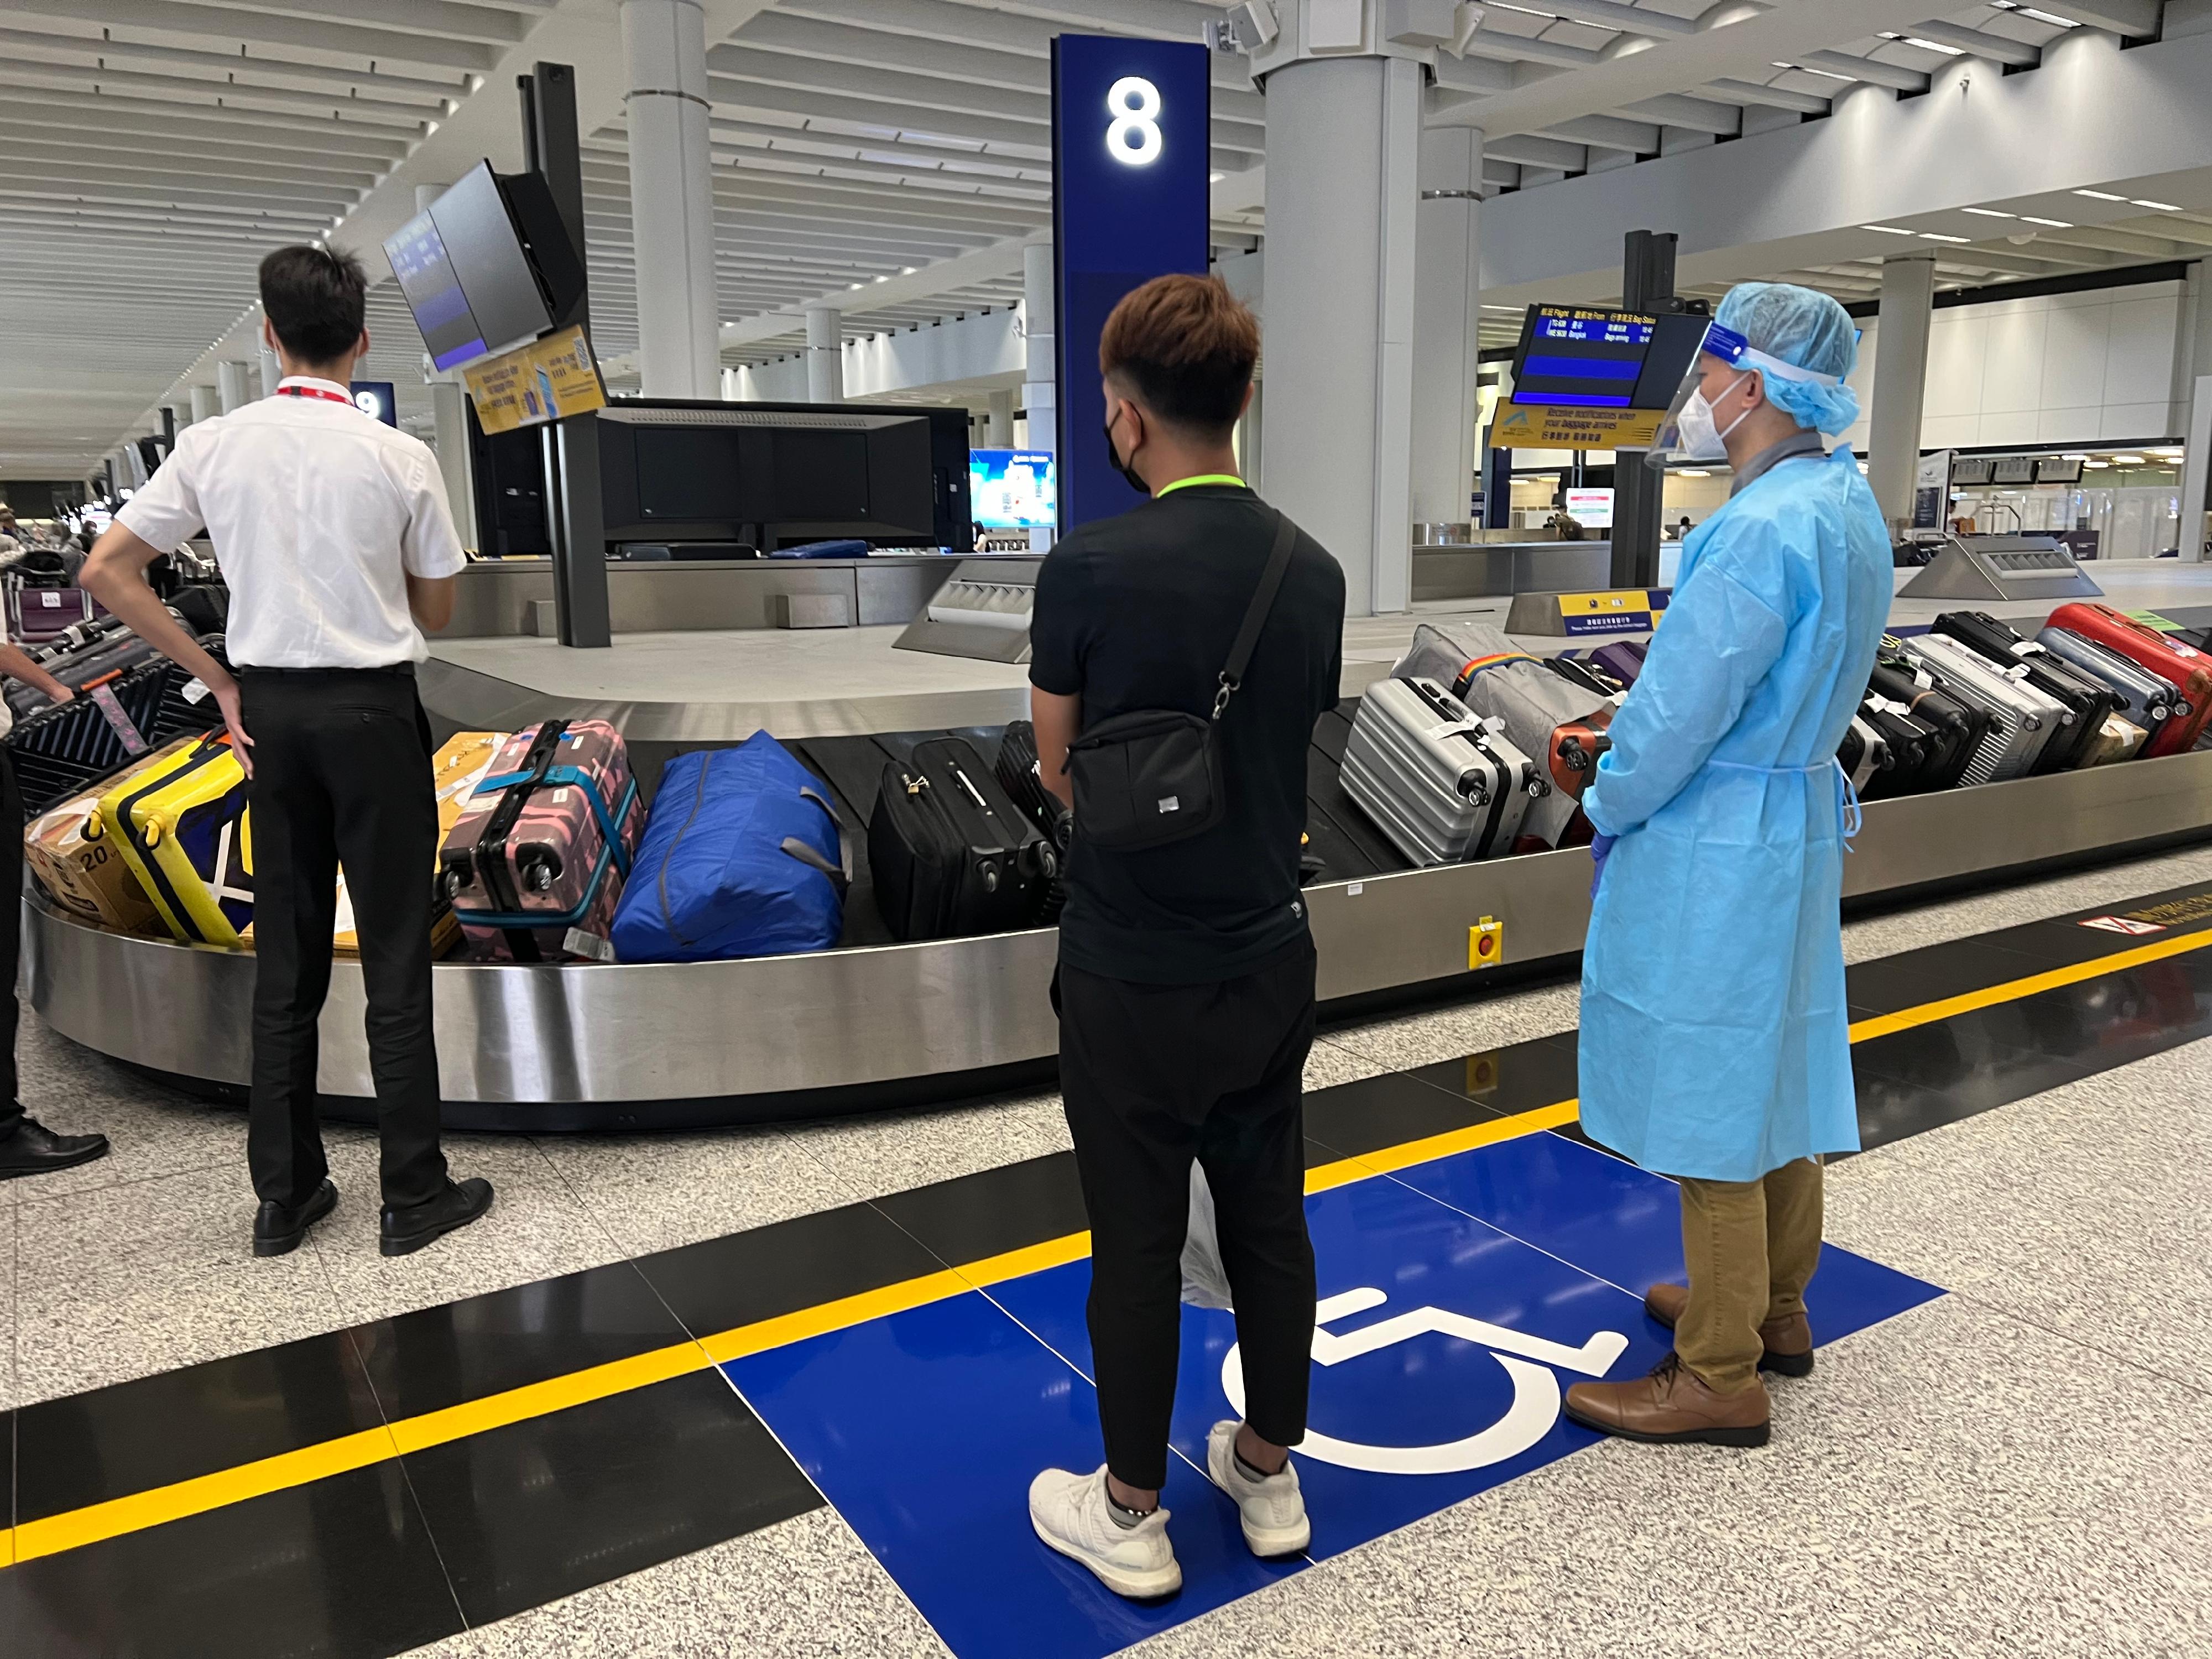 今日（八月二十五日）三名求助港人安全抵达香港国际机场。图示穿上防护装备的入境处人员，协助有关求助港人领取行李。